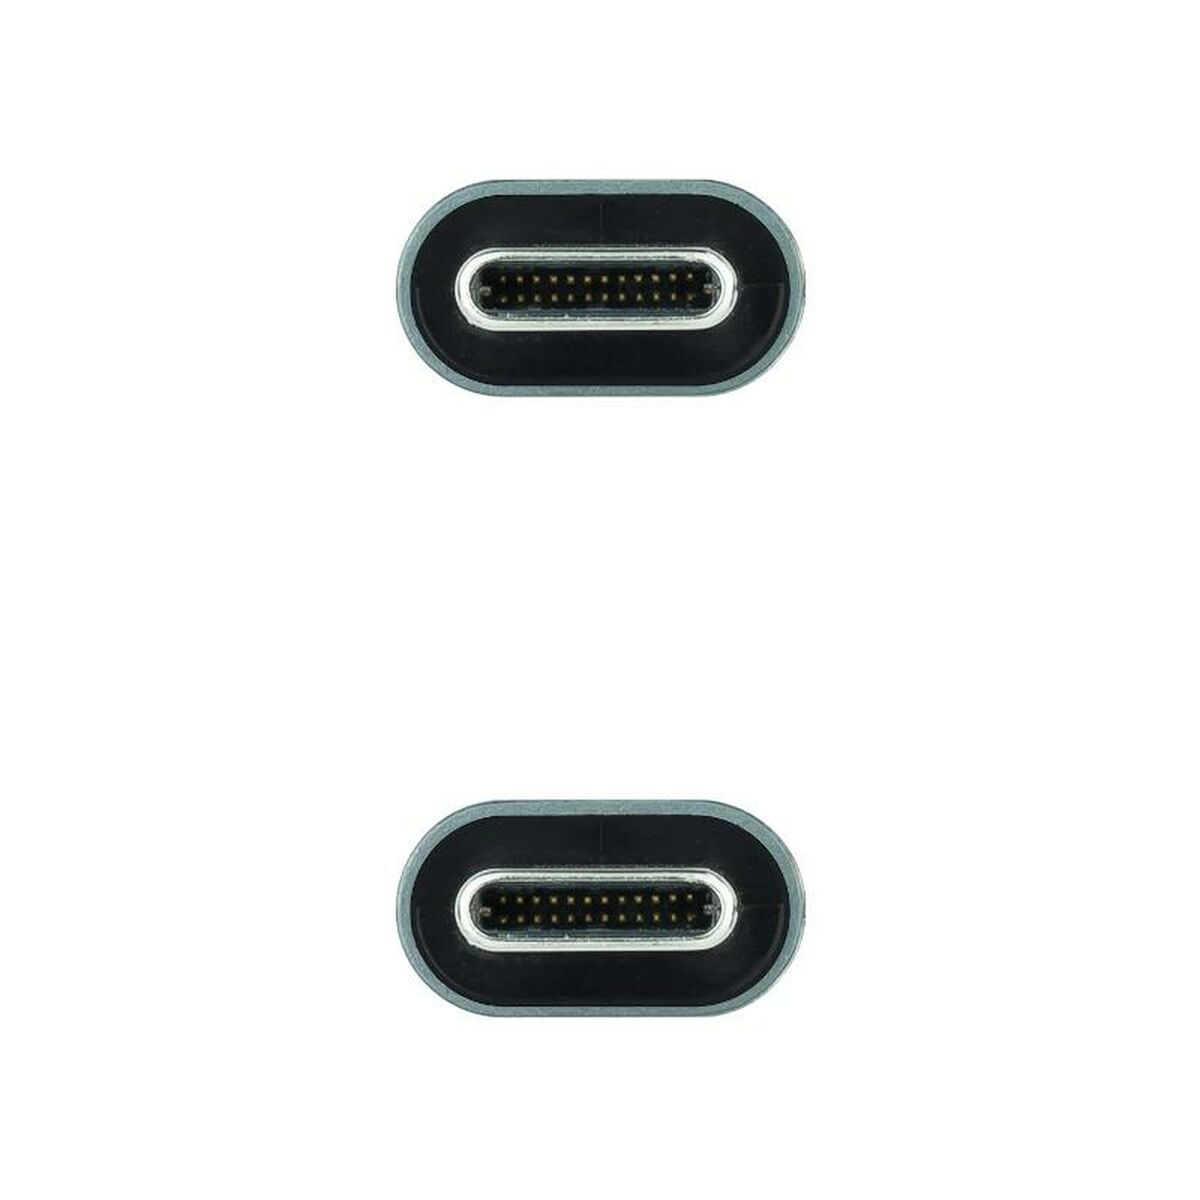 Kabel USB C NANOCABLE 10.01.4301 1 m